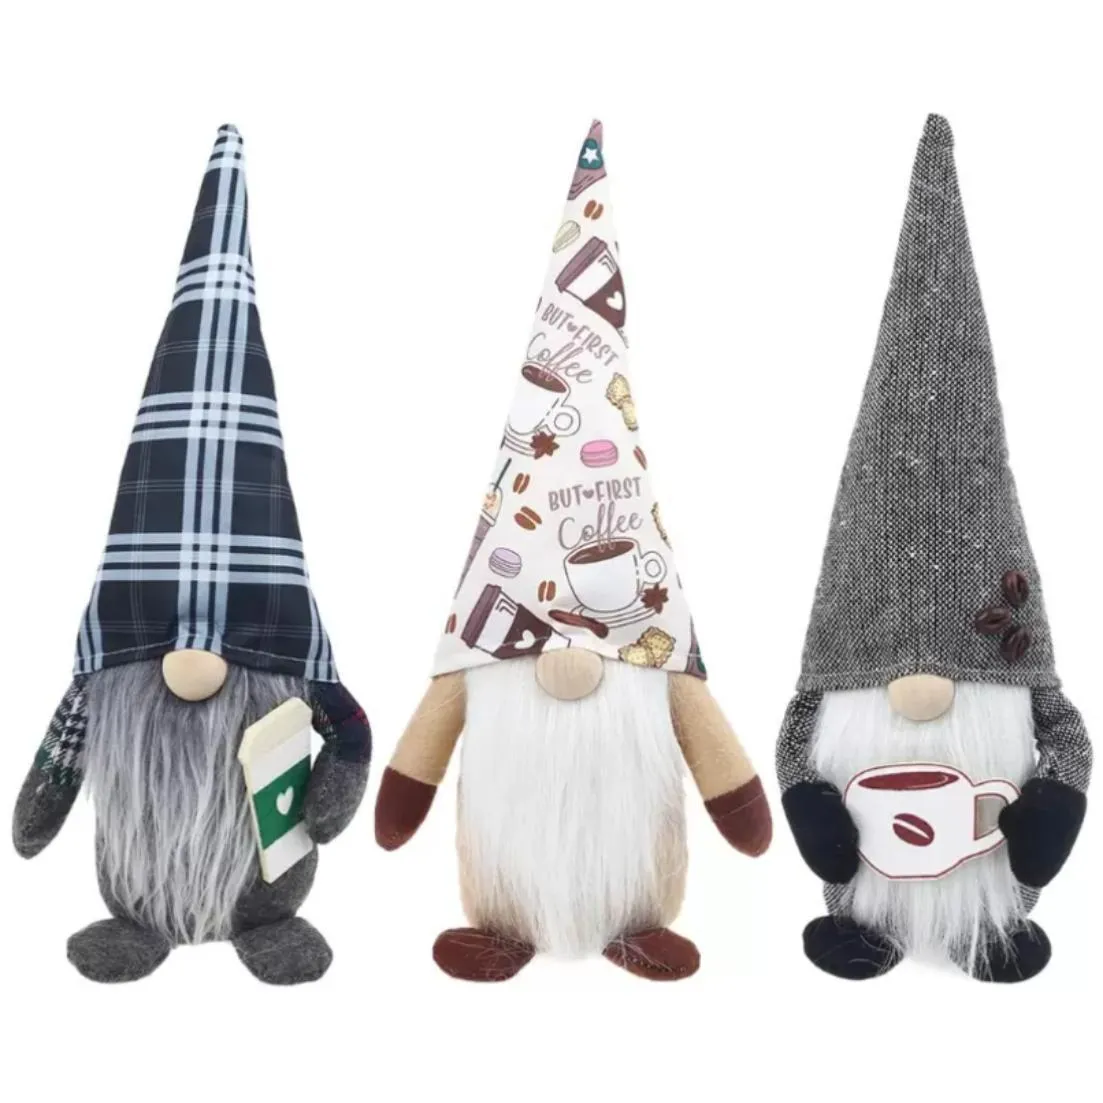 Décoration de noël café Gnome Plaid suédois Tomte jouet sans visage Figurine scandinave décor nordique en peluche